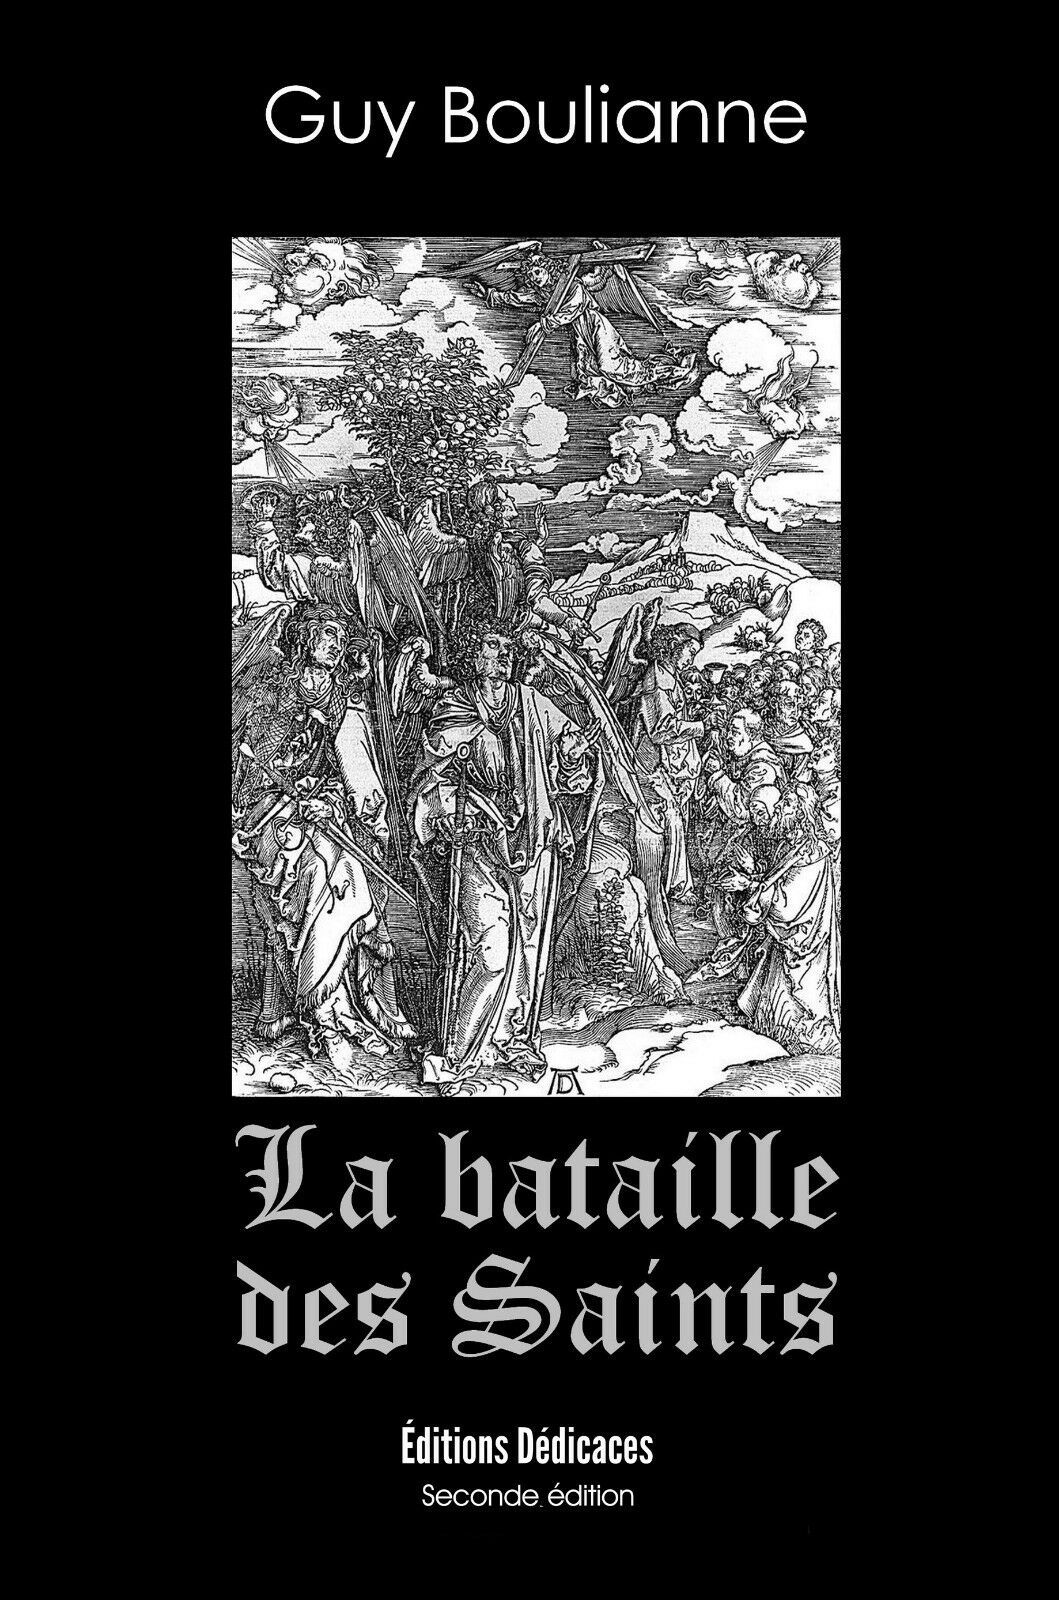 Primary image for La bataille des saints, par Guy Boulianne